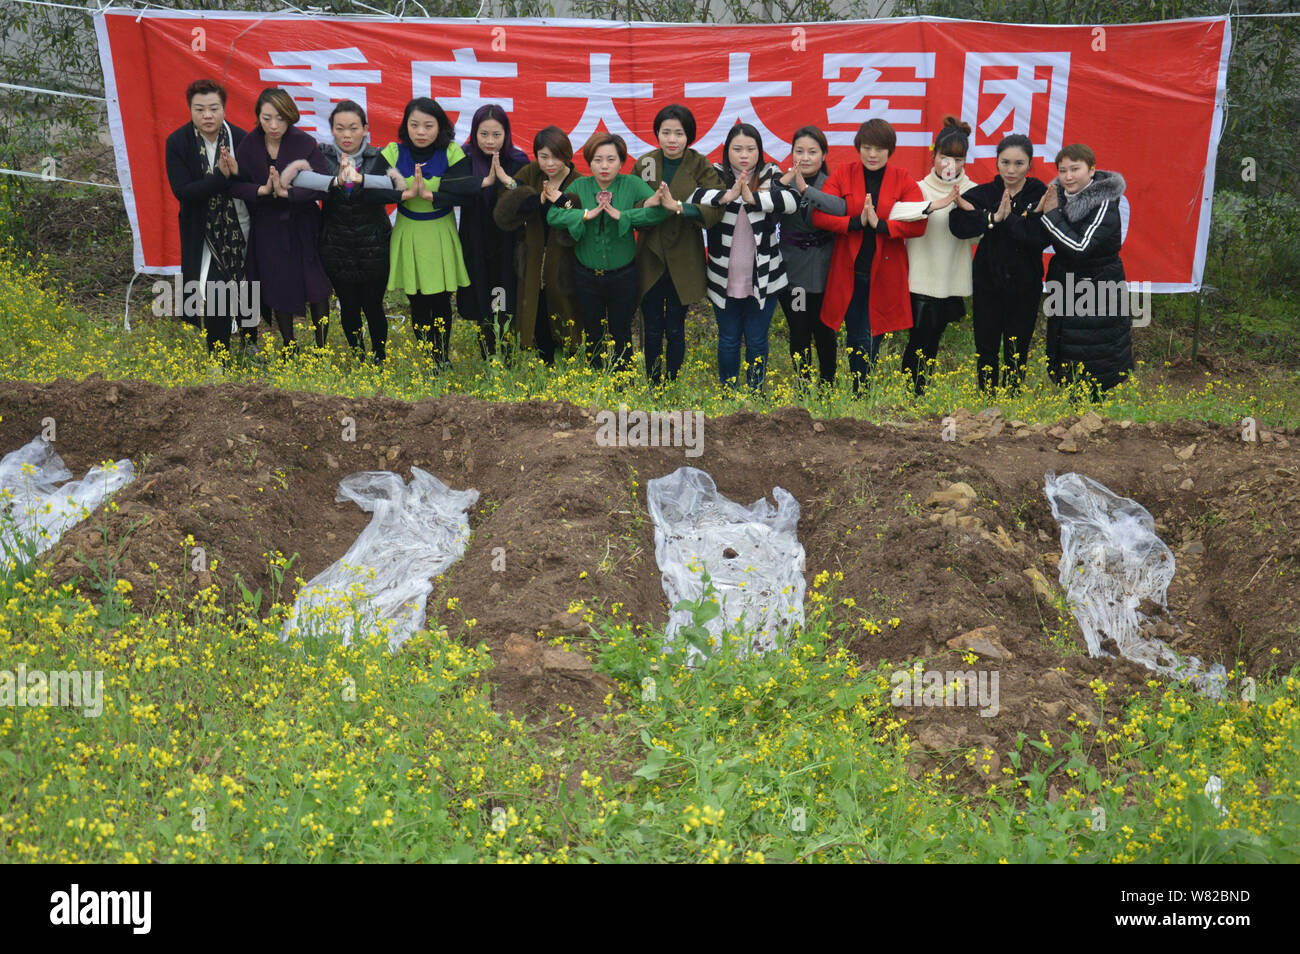 Femmes chinoises méditer avec leurs mains en une prière avant de se positionner dans des "tombes" au cours d'un rituel peu commun pour aider à faire face à leur divorcés Banque D'Images